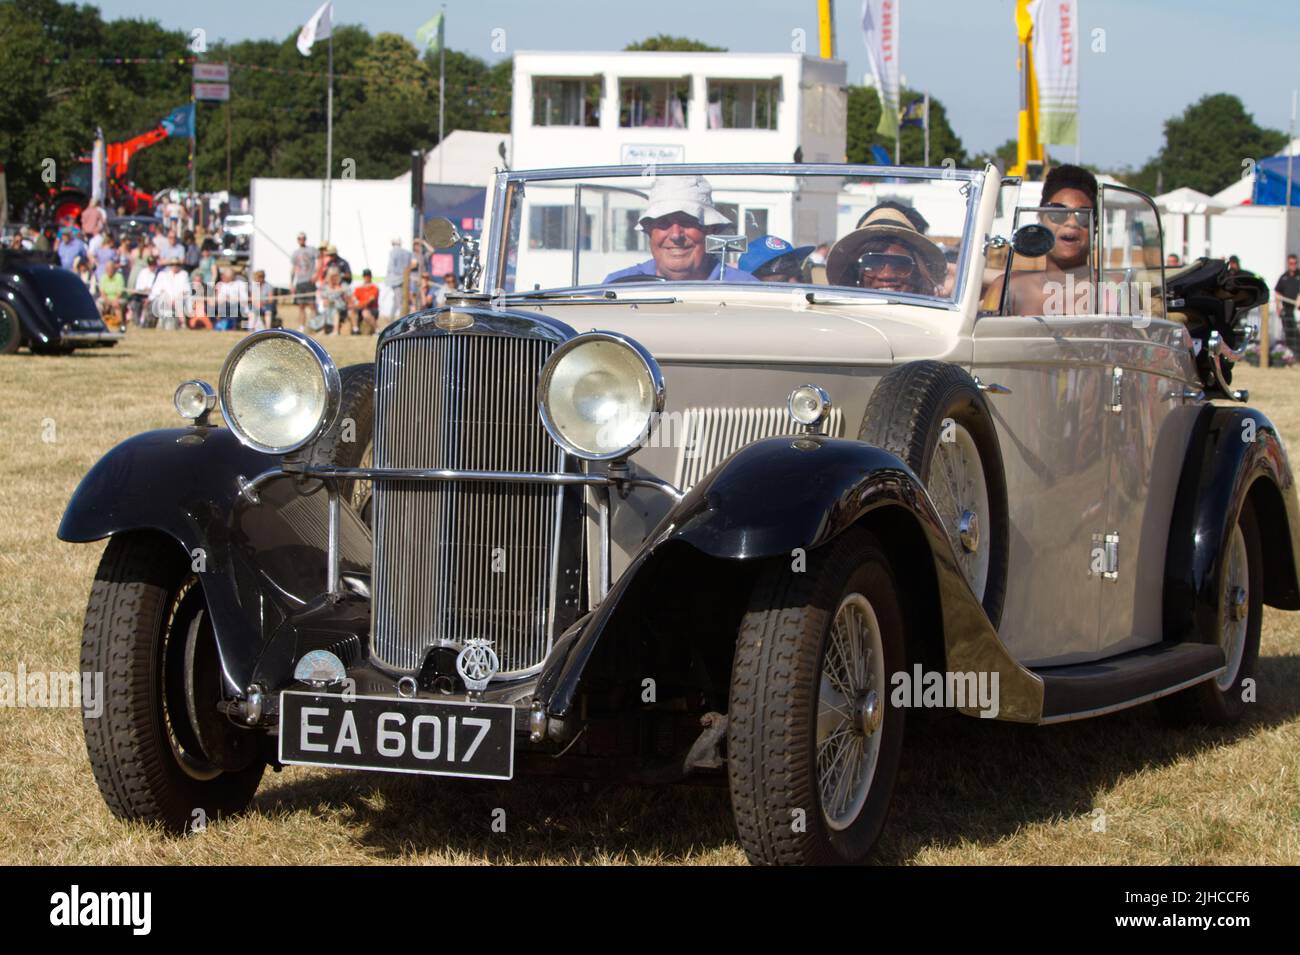 Auto classica in mostra al Tendringing Hundred Show 2022 a Essex, il principale evento agricolo della contea. Qui è mostrata una vettura 1934 Sunbeam 25. Foto Stock